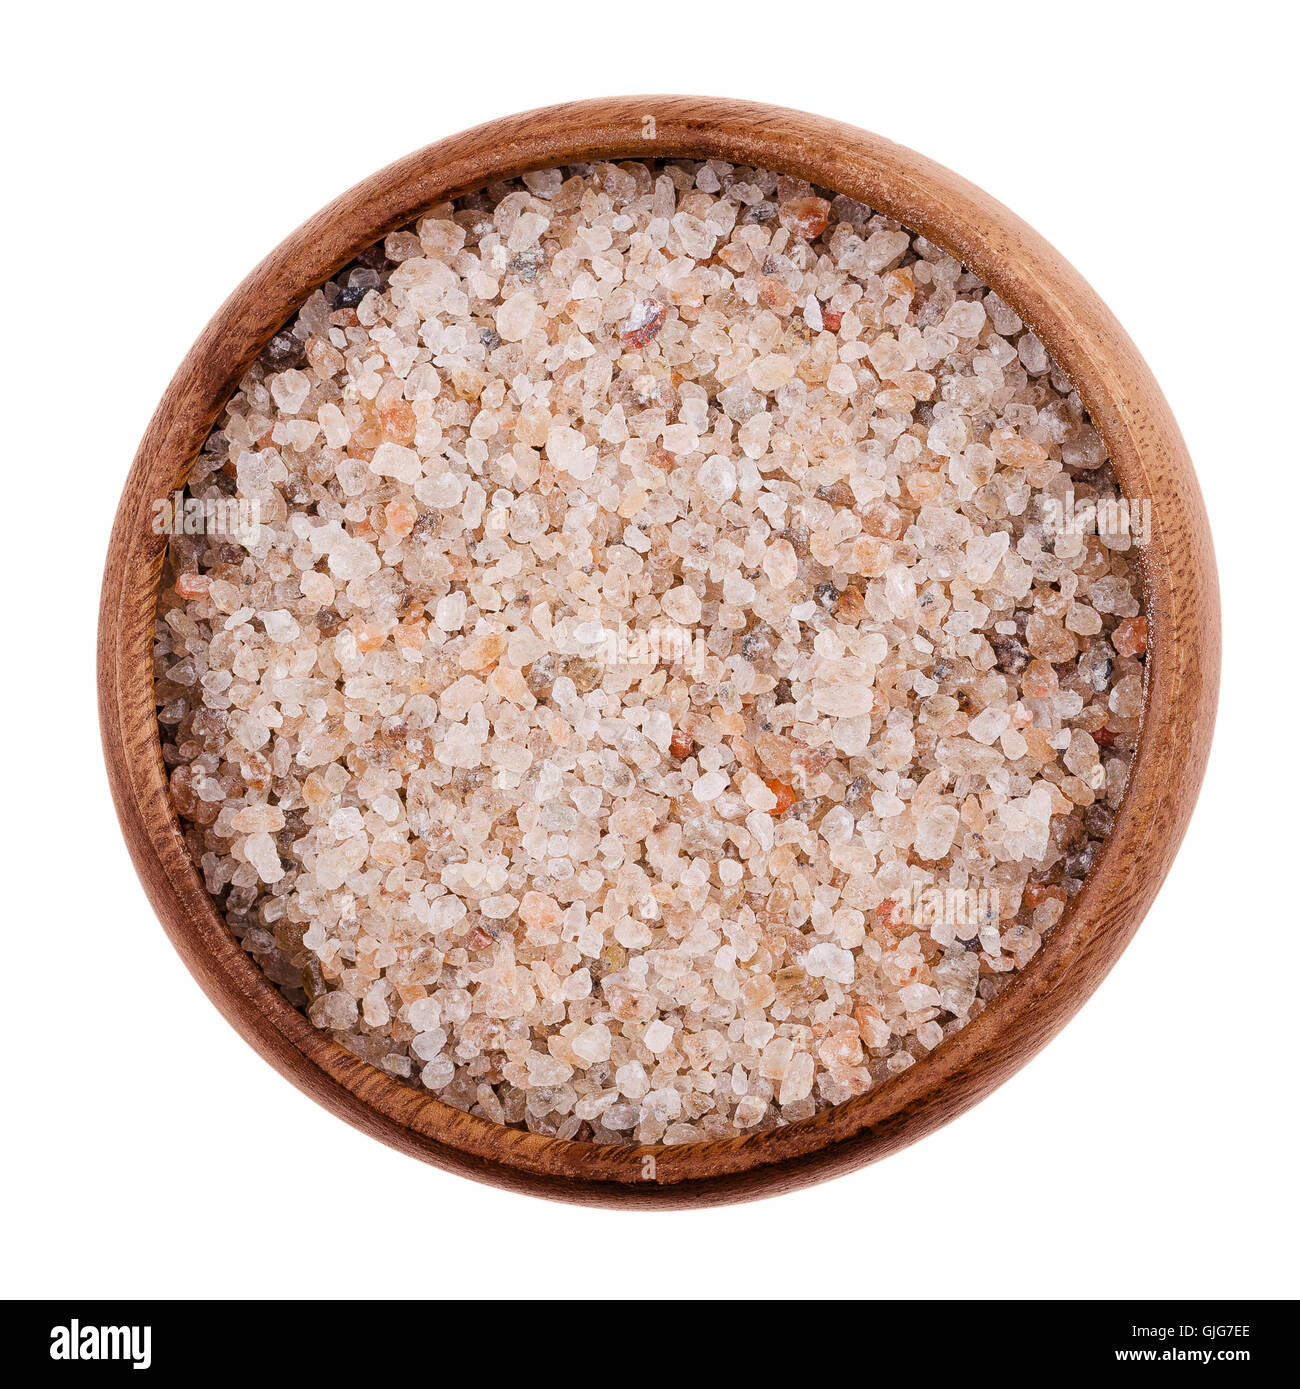 Red Rock naturel le sel dans un bol sur fond blanc. Les grains comestibles et de chlorure de sodium, NaCl, également l'halite. Banque D'Images